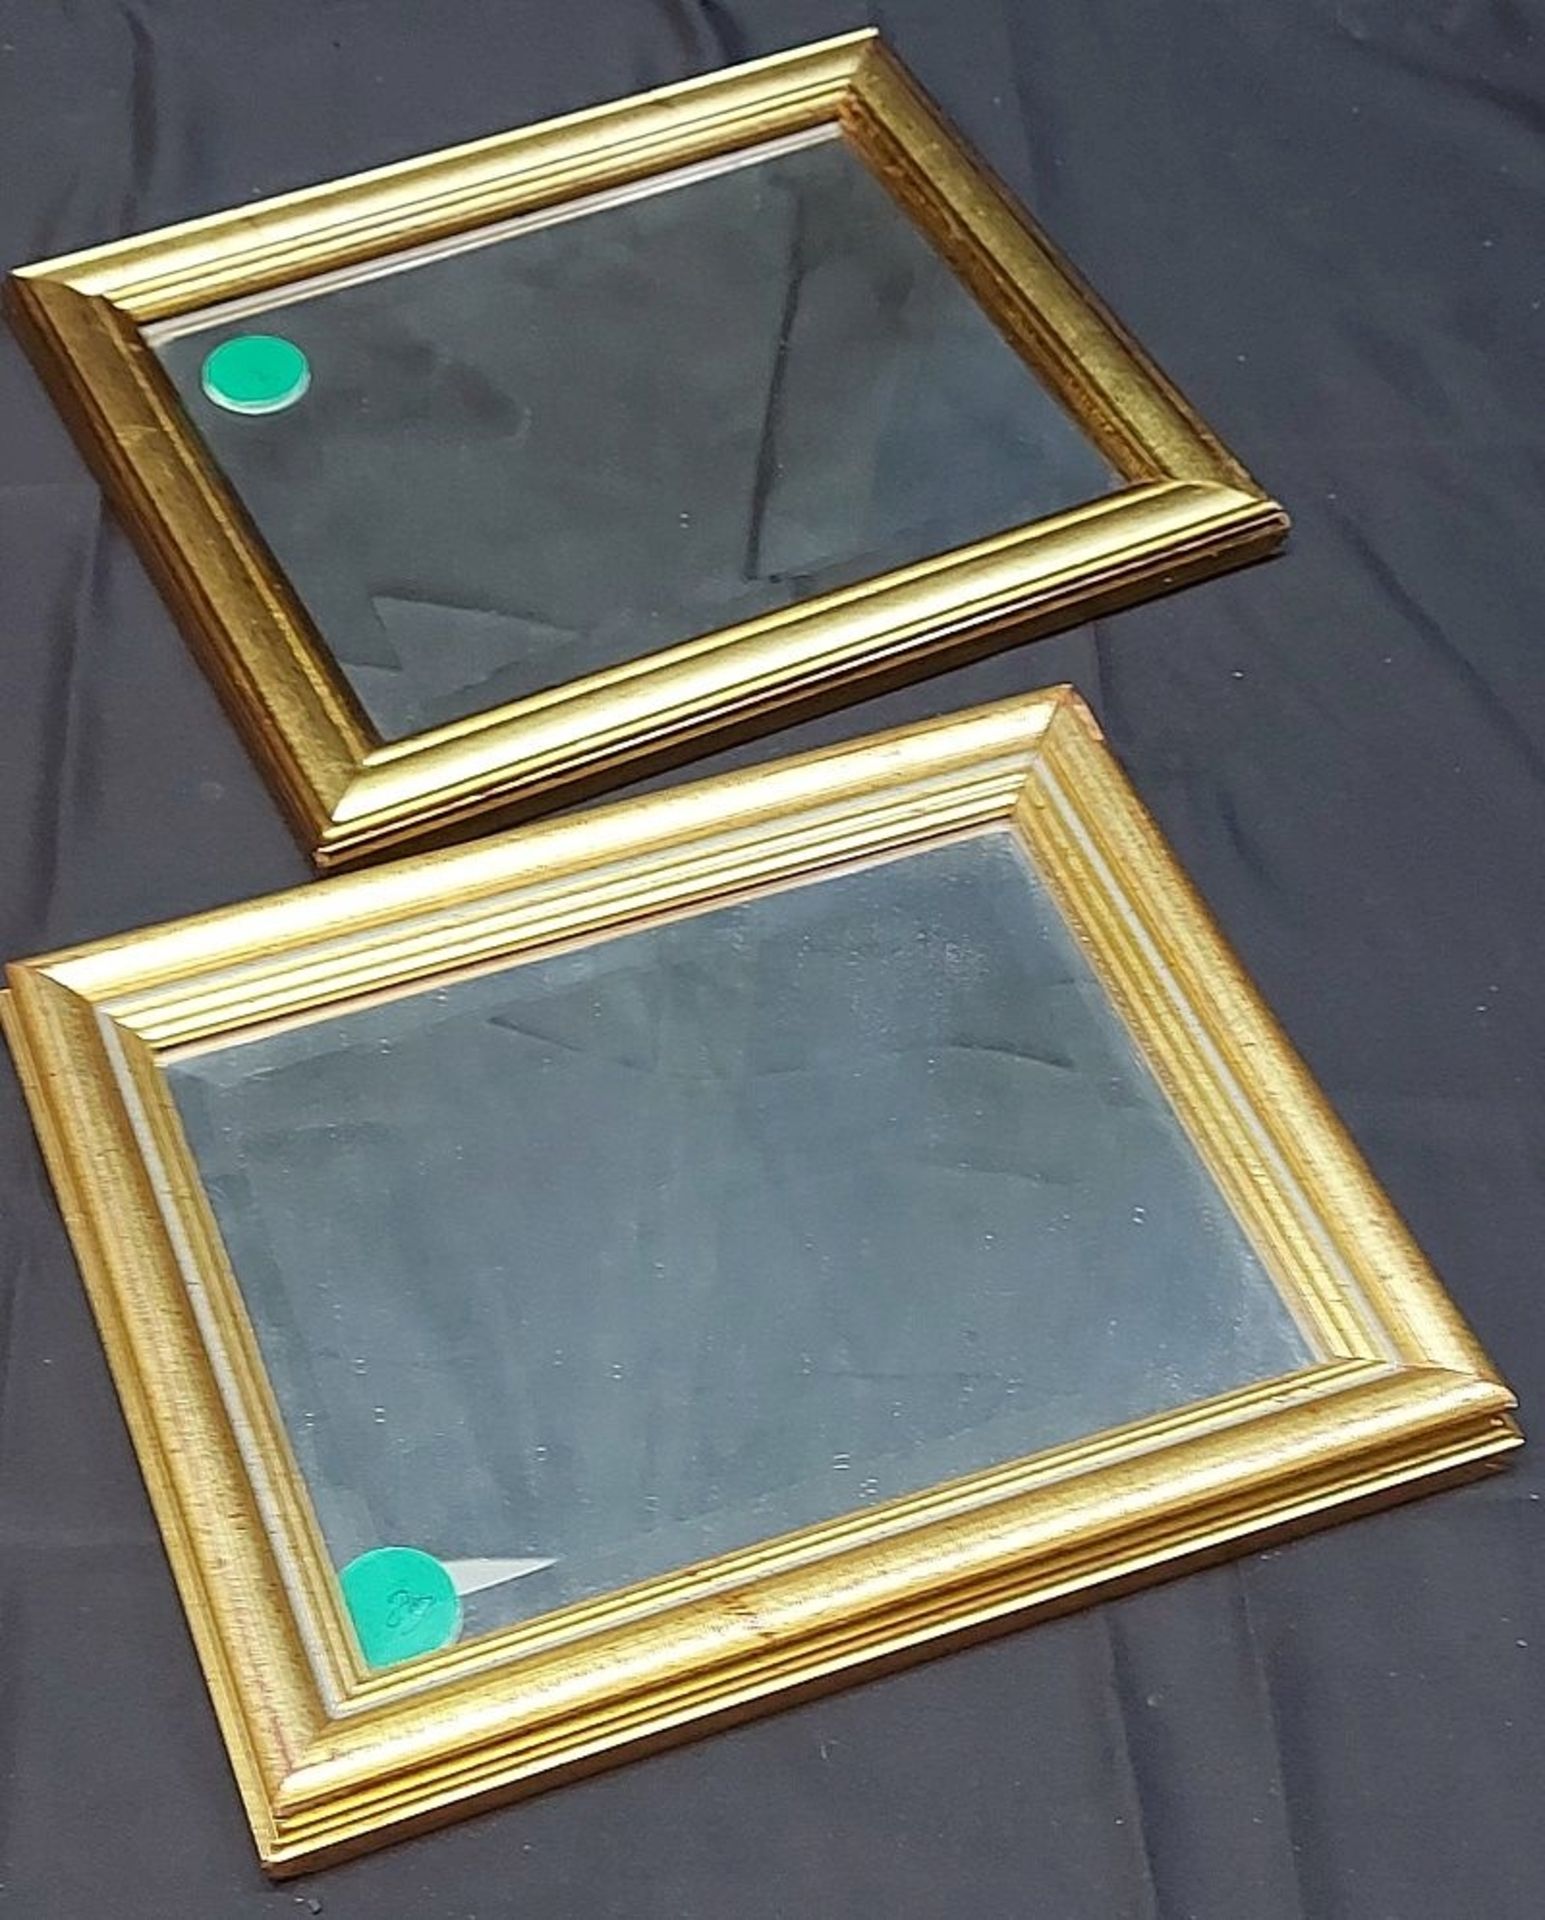 1 Paar gerahmte Spiegel schlichter Goldrahmen 30x25cm - Image 3 of 3